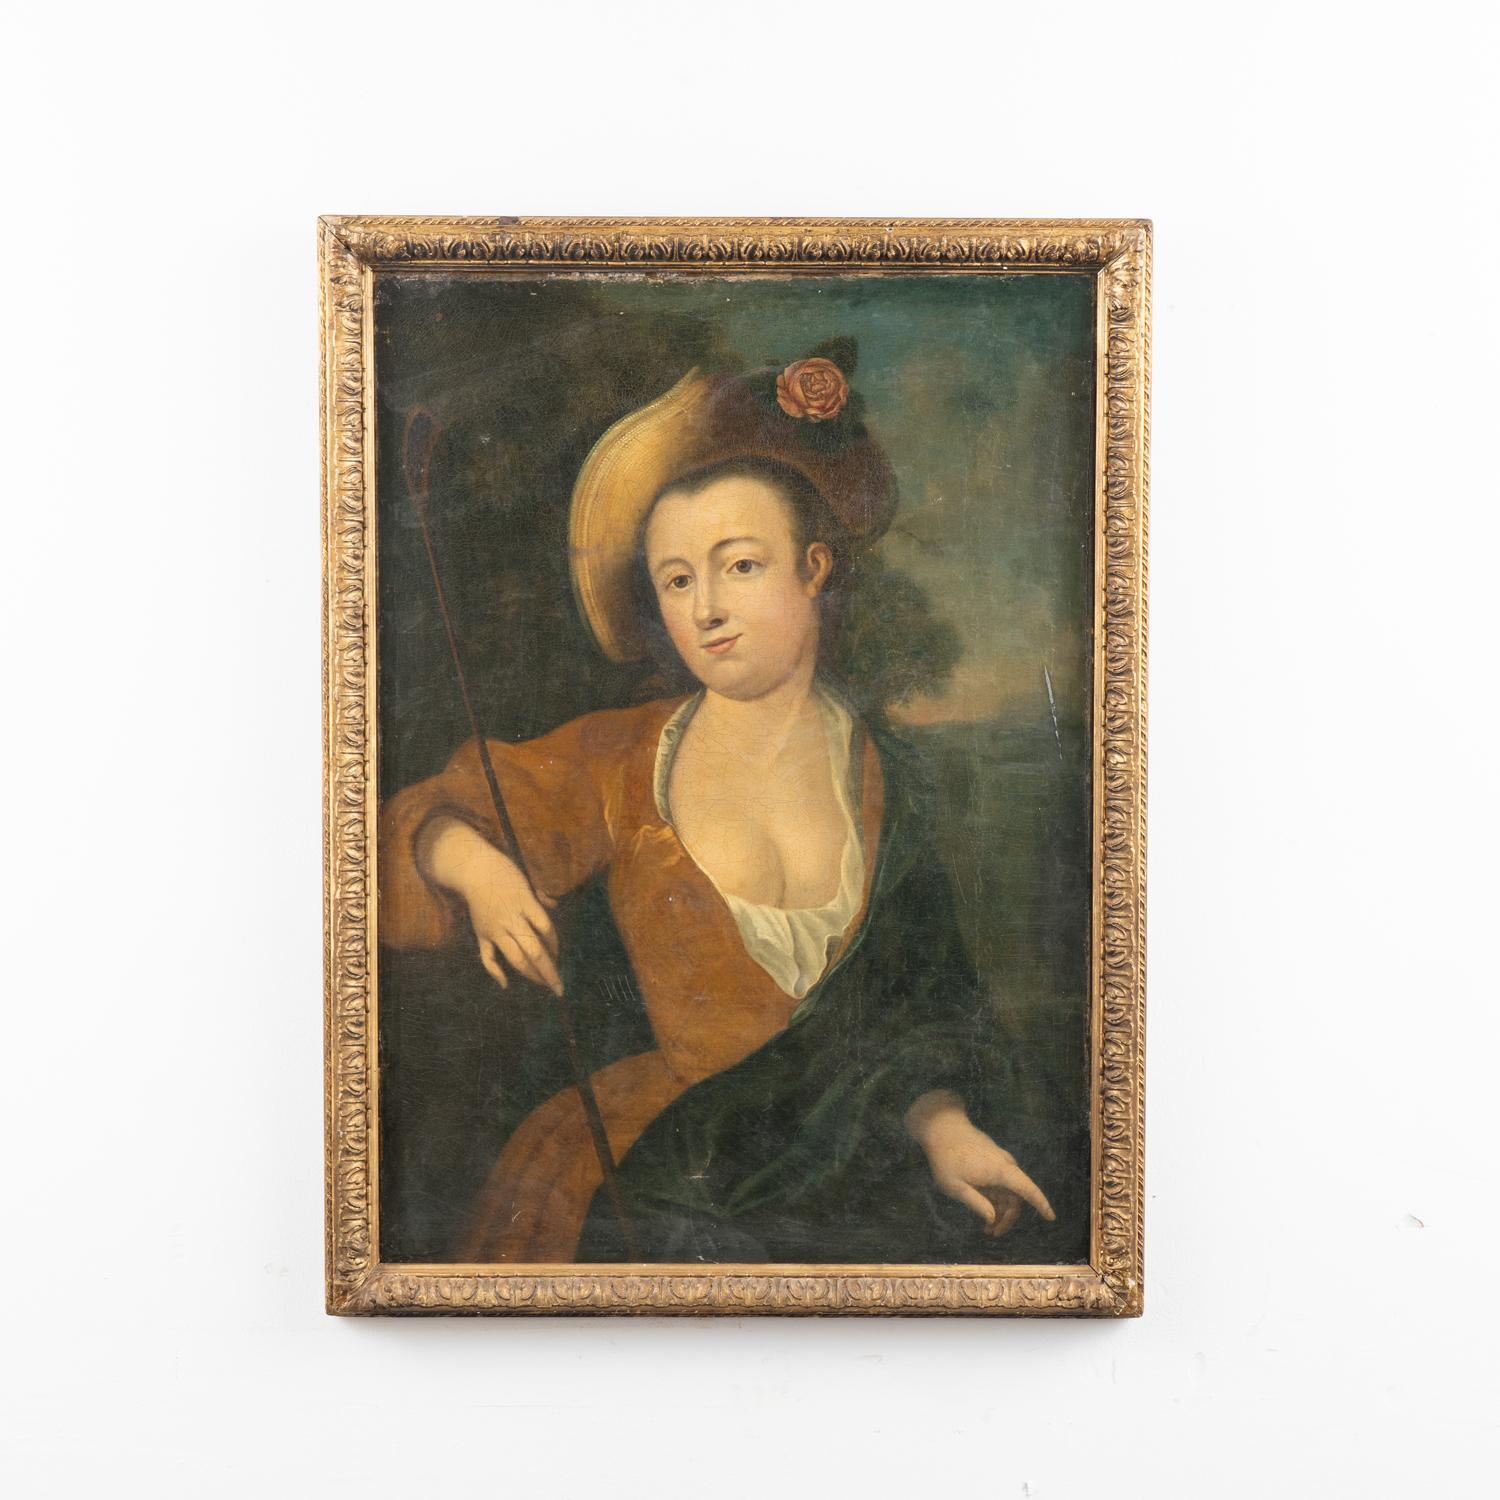 Original Öl auf Leinwand Porträt einer Dame mit Hut und Reitgerte.
Unbekannter Künstler, um 1700.
Starke Abnutzung, durchgehend Craquelé. Flecken, Farbverluste, Kratzer.
Typische altersbedingte Schrammen, Kratzer und Abschürfungen am lackierten